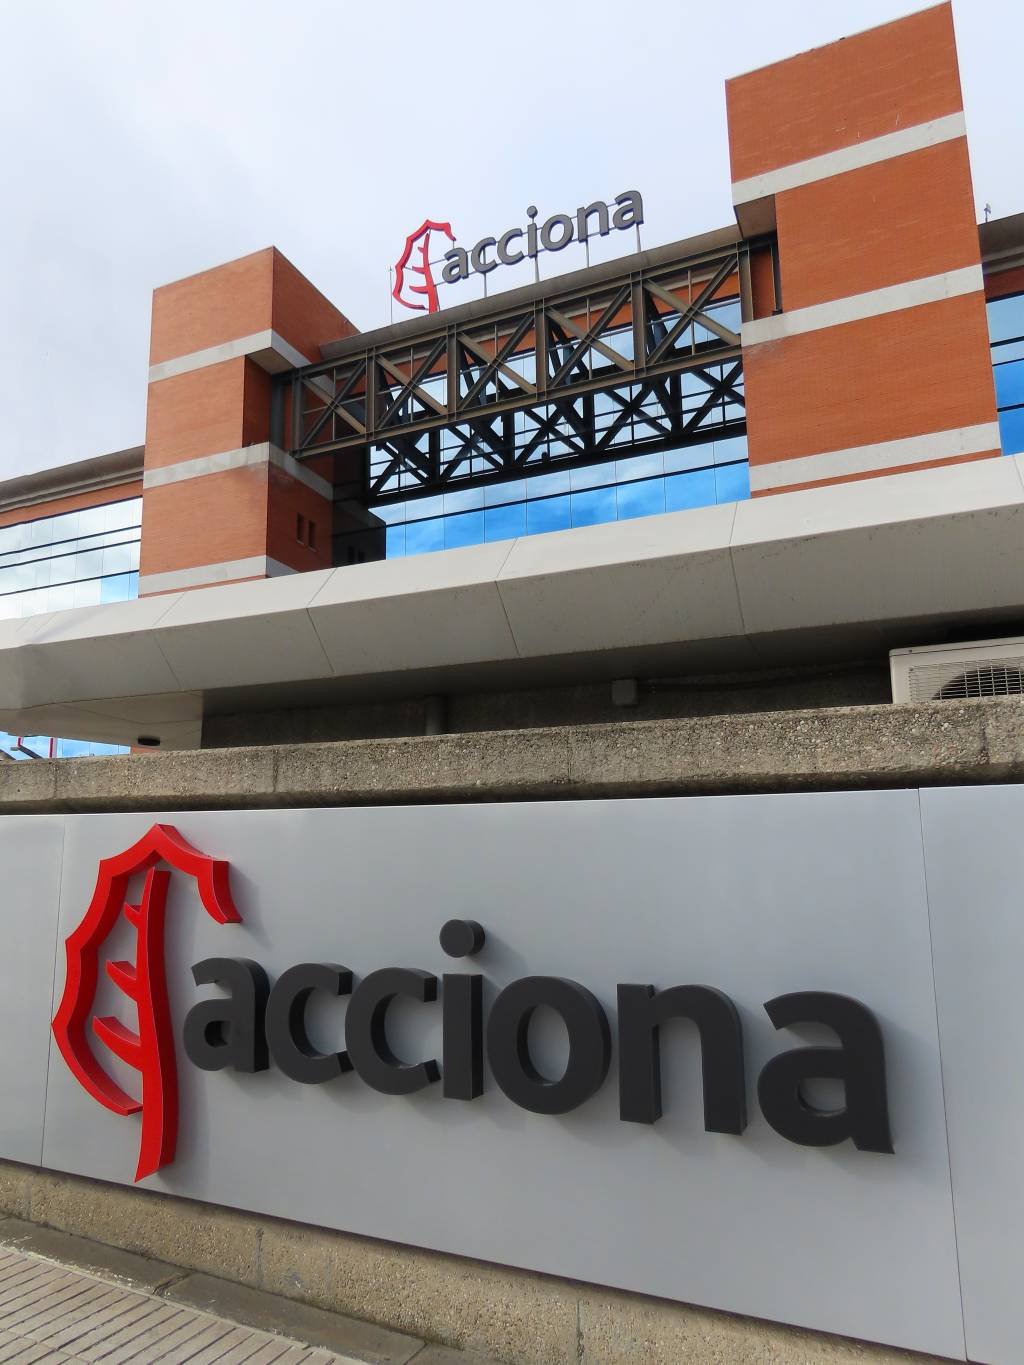 Procurada, a Acciona disse que não comenta rumores de mercado (Cristina Arias/Getty Images)